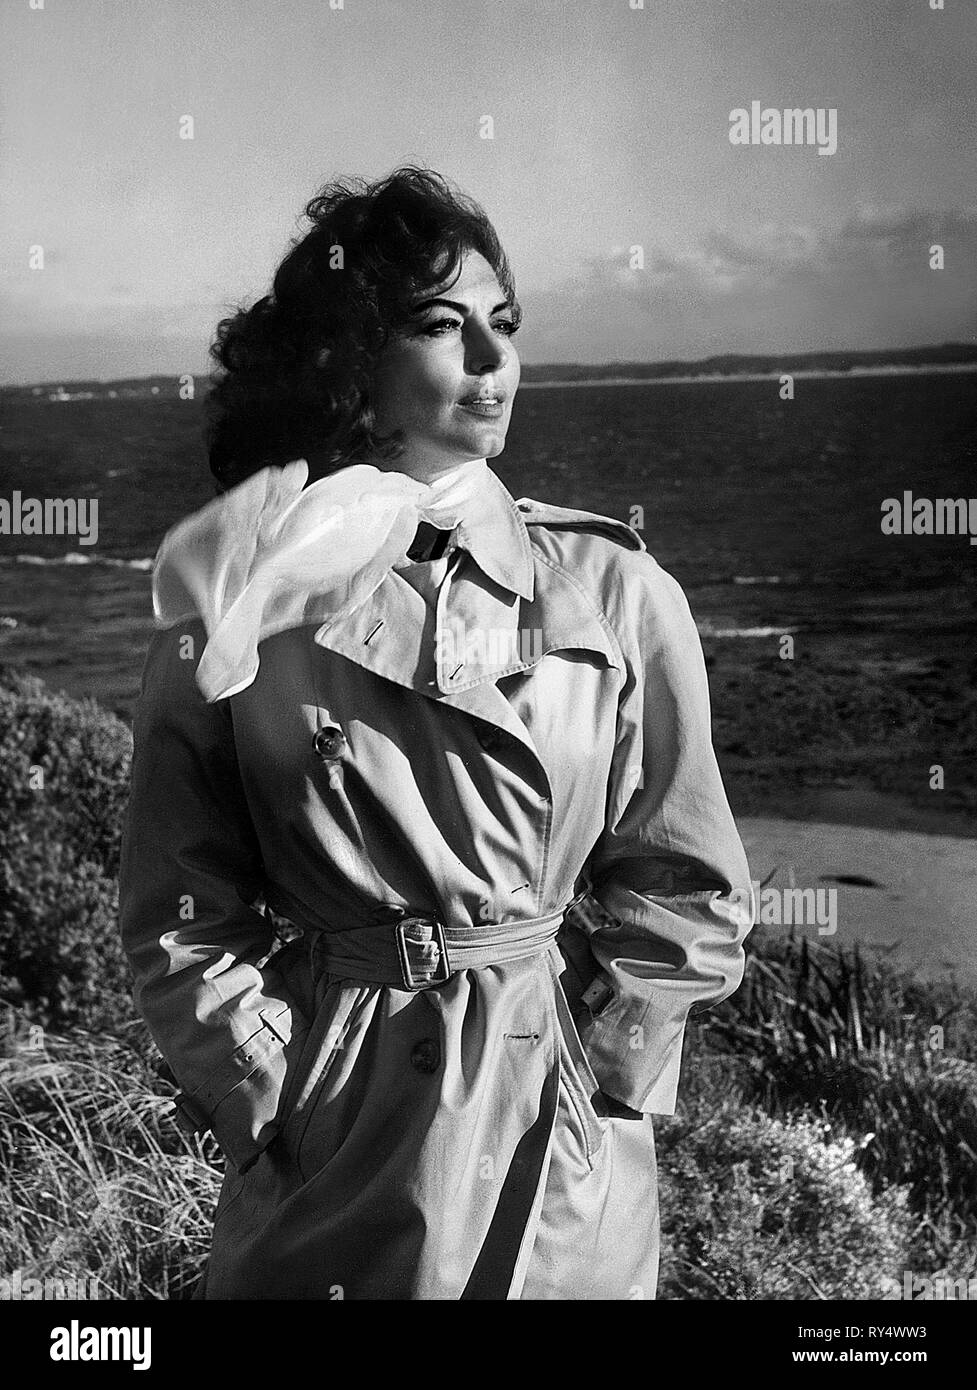 AVA GARDNER, ON THE BEACH, 1959 Stock Photo